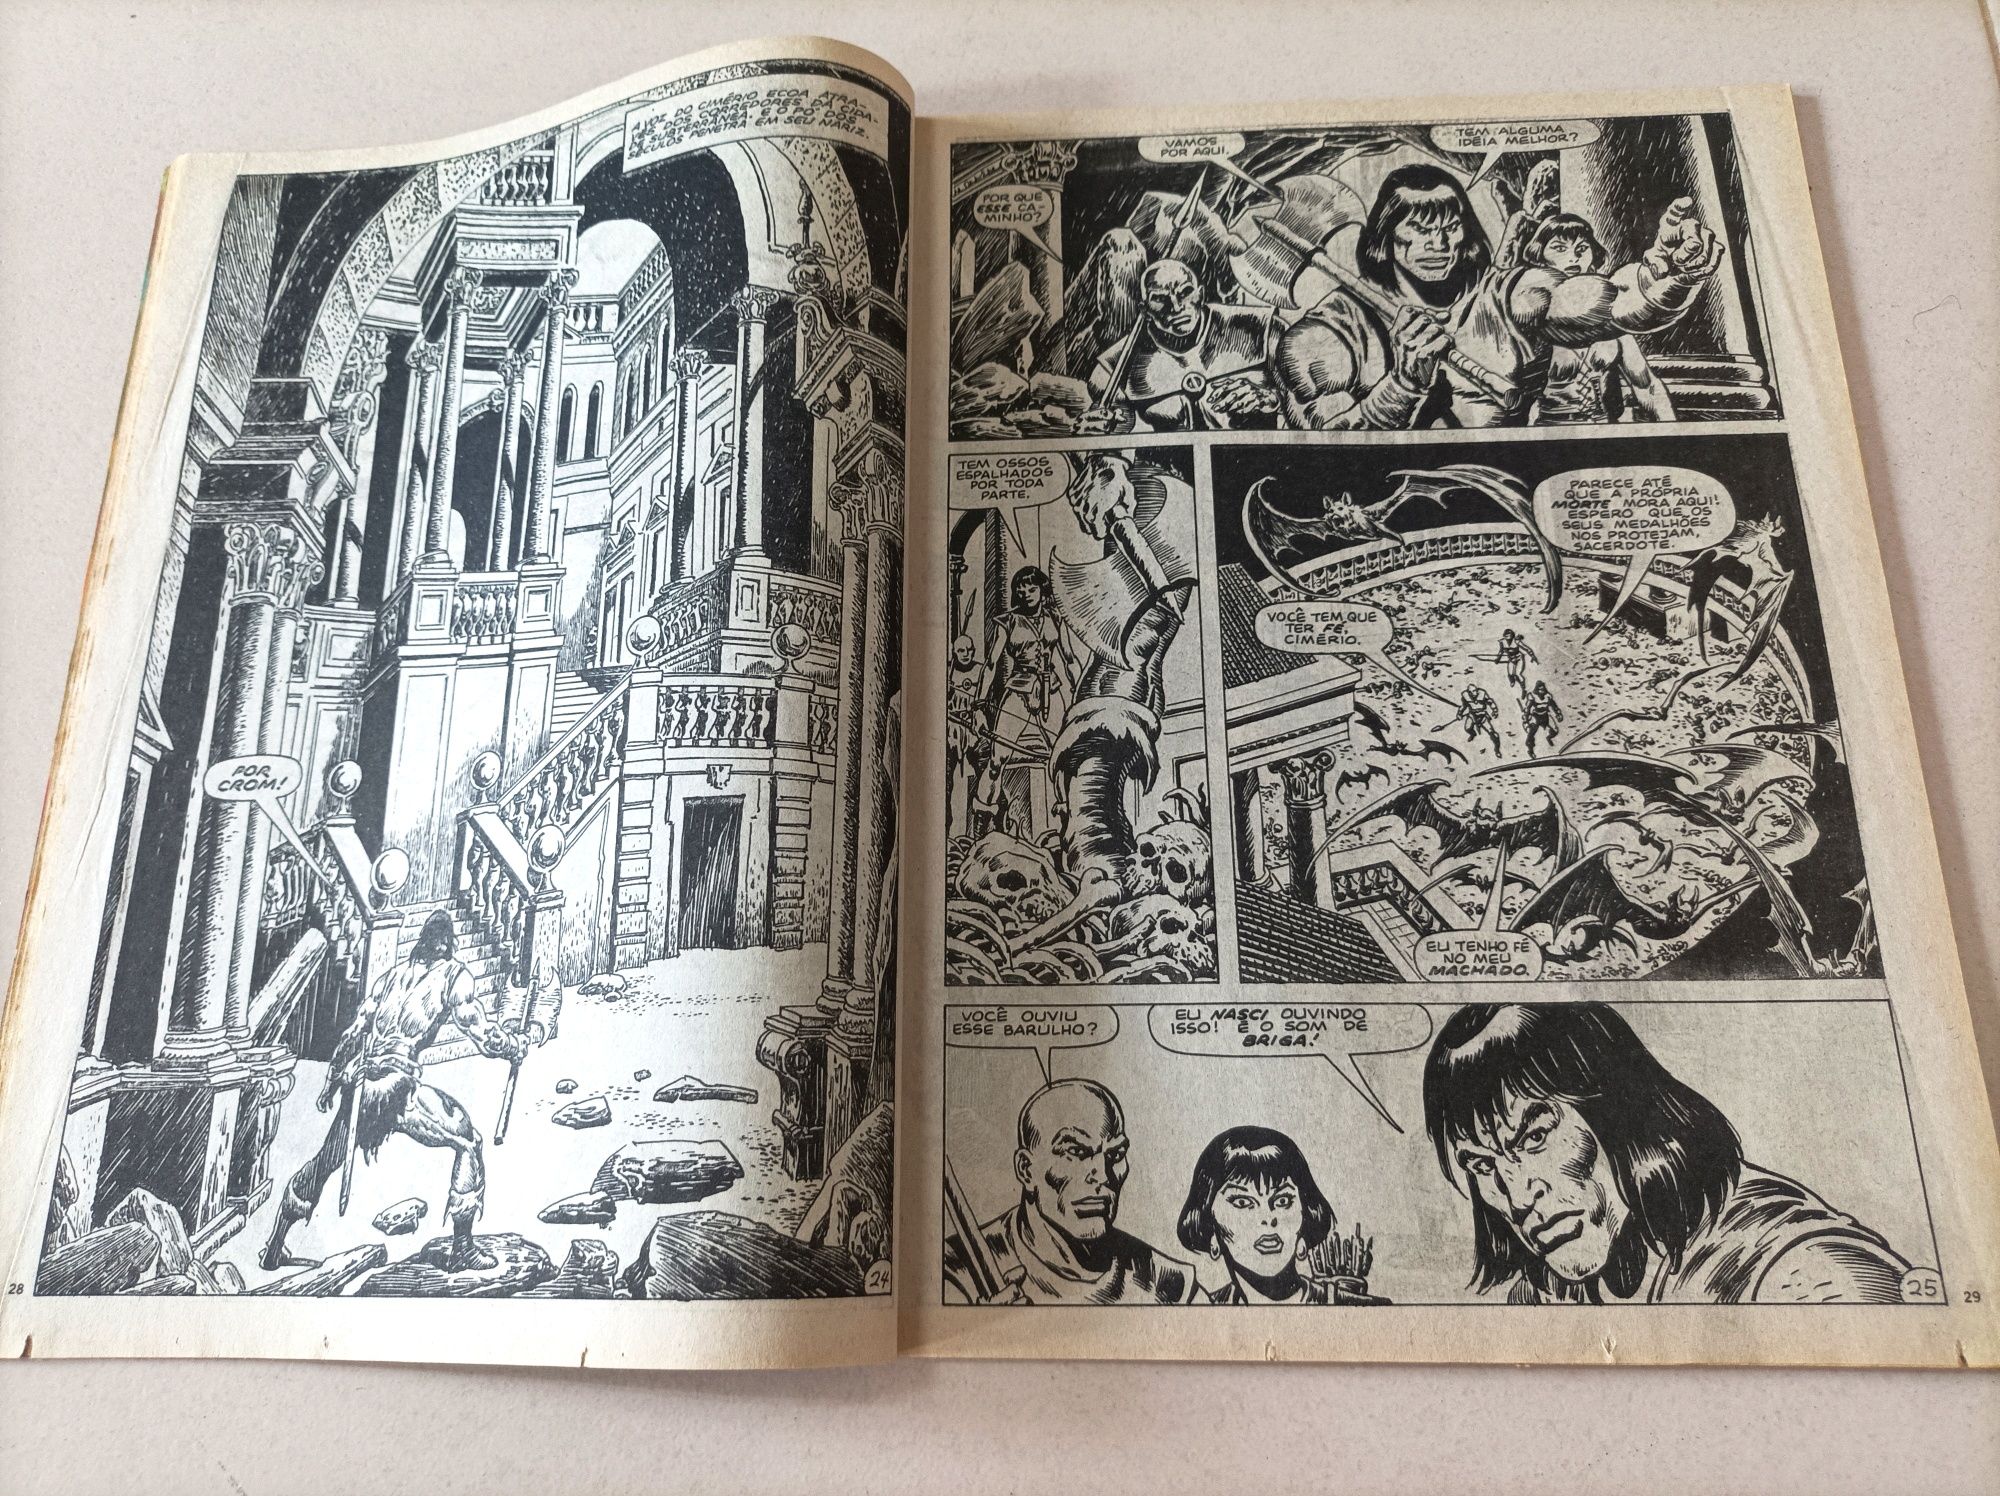 Lote de 3 Revistas antigas - A Espada Selvagem de Conan (Vintage)